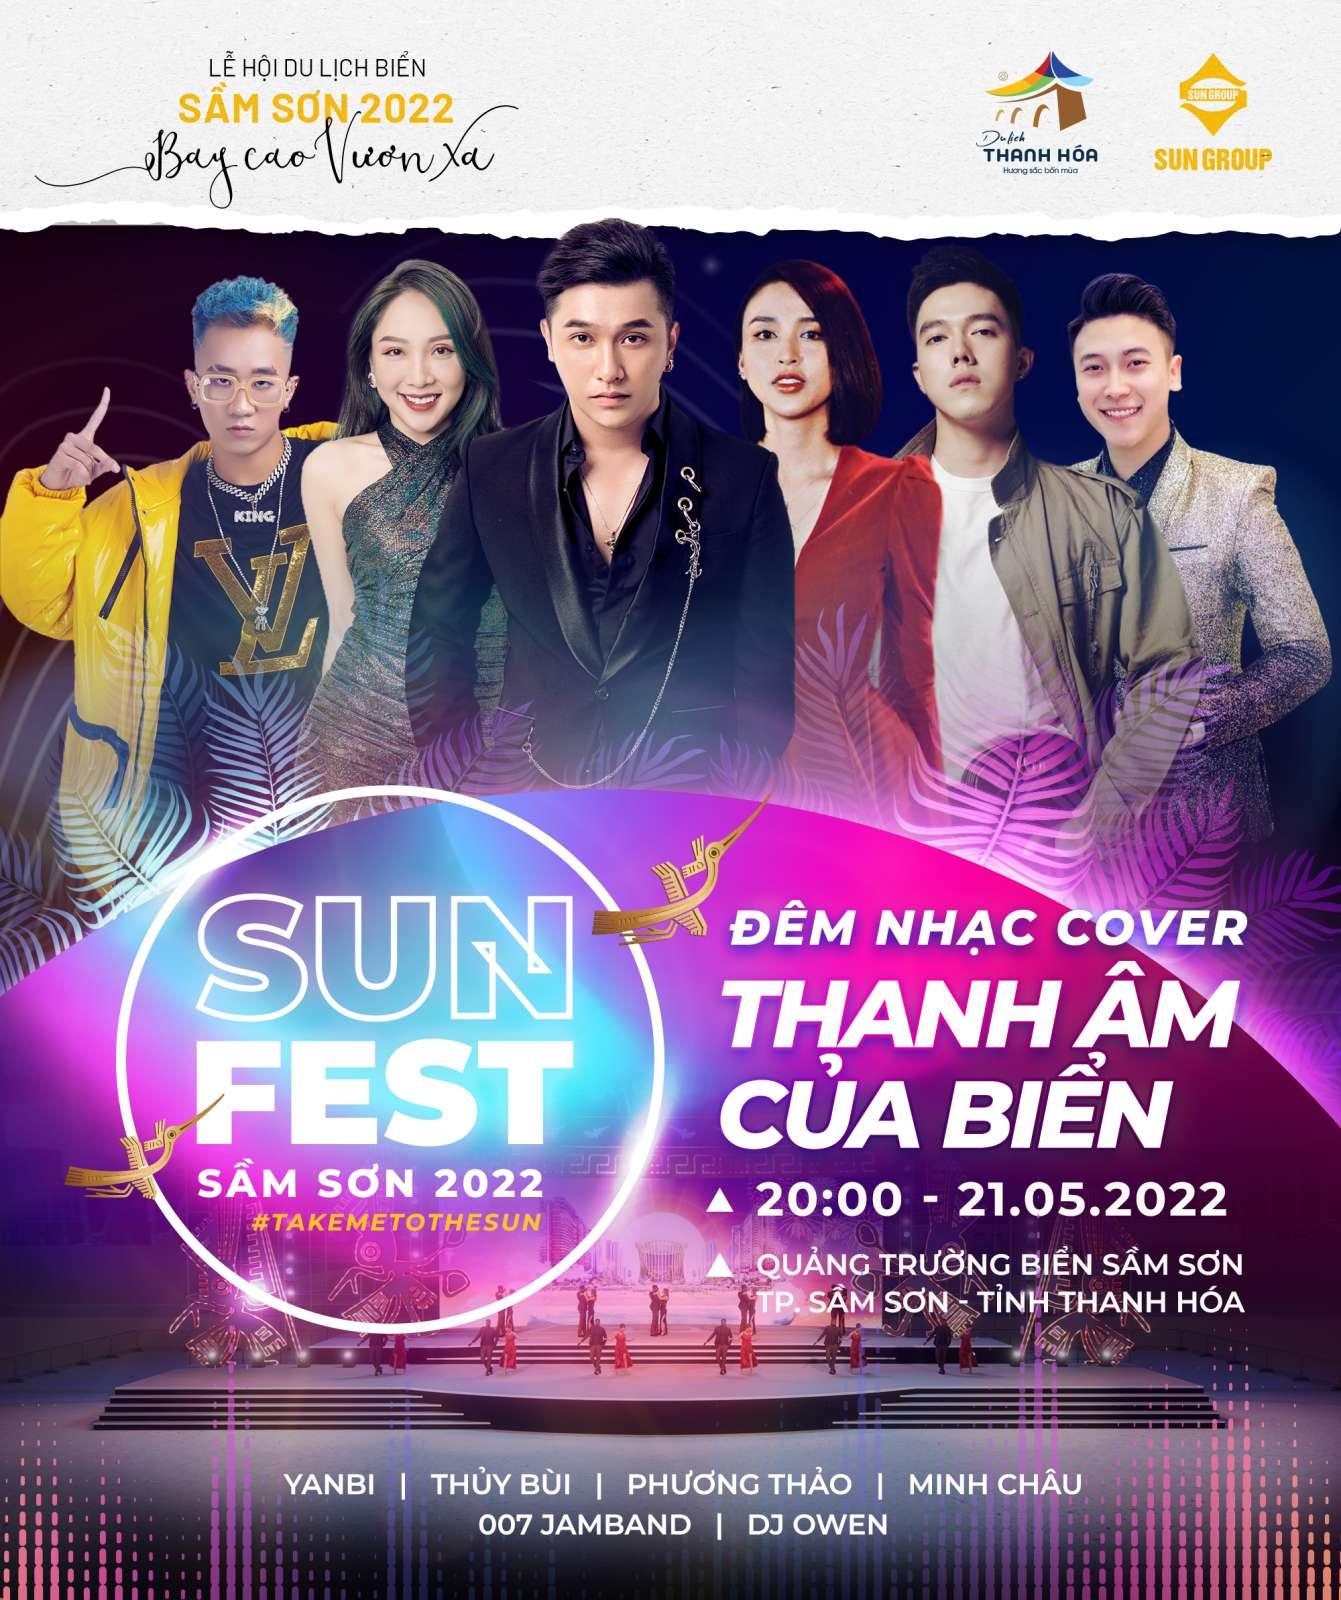 Yanbi hứa hẹn sẽ “cháy hết mình” trong đêm nhạc Sun Fest tại Sầm Sơn - Ảnh 1.